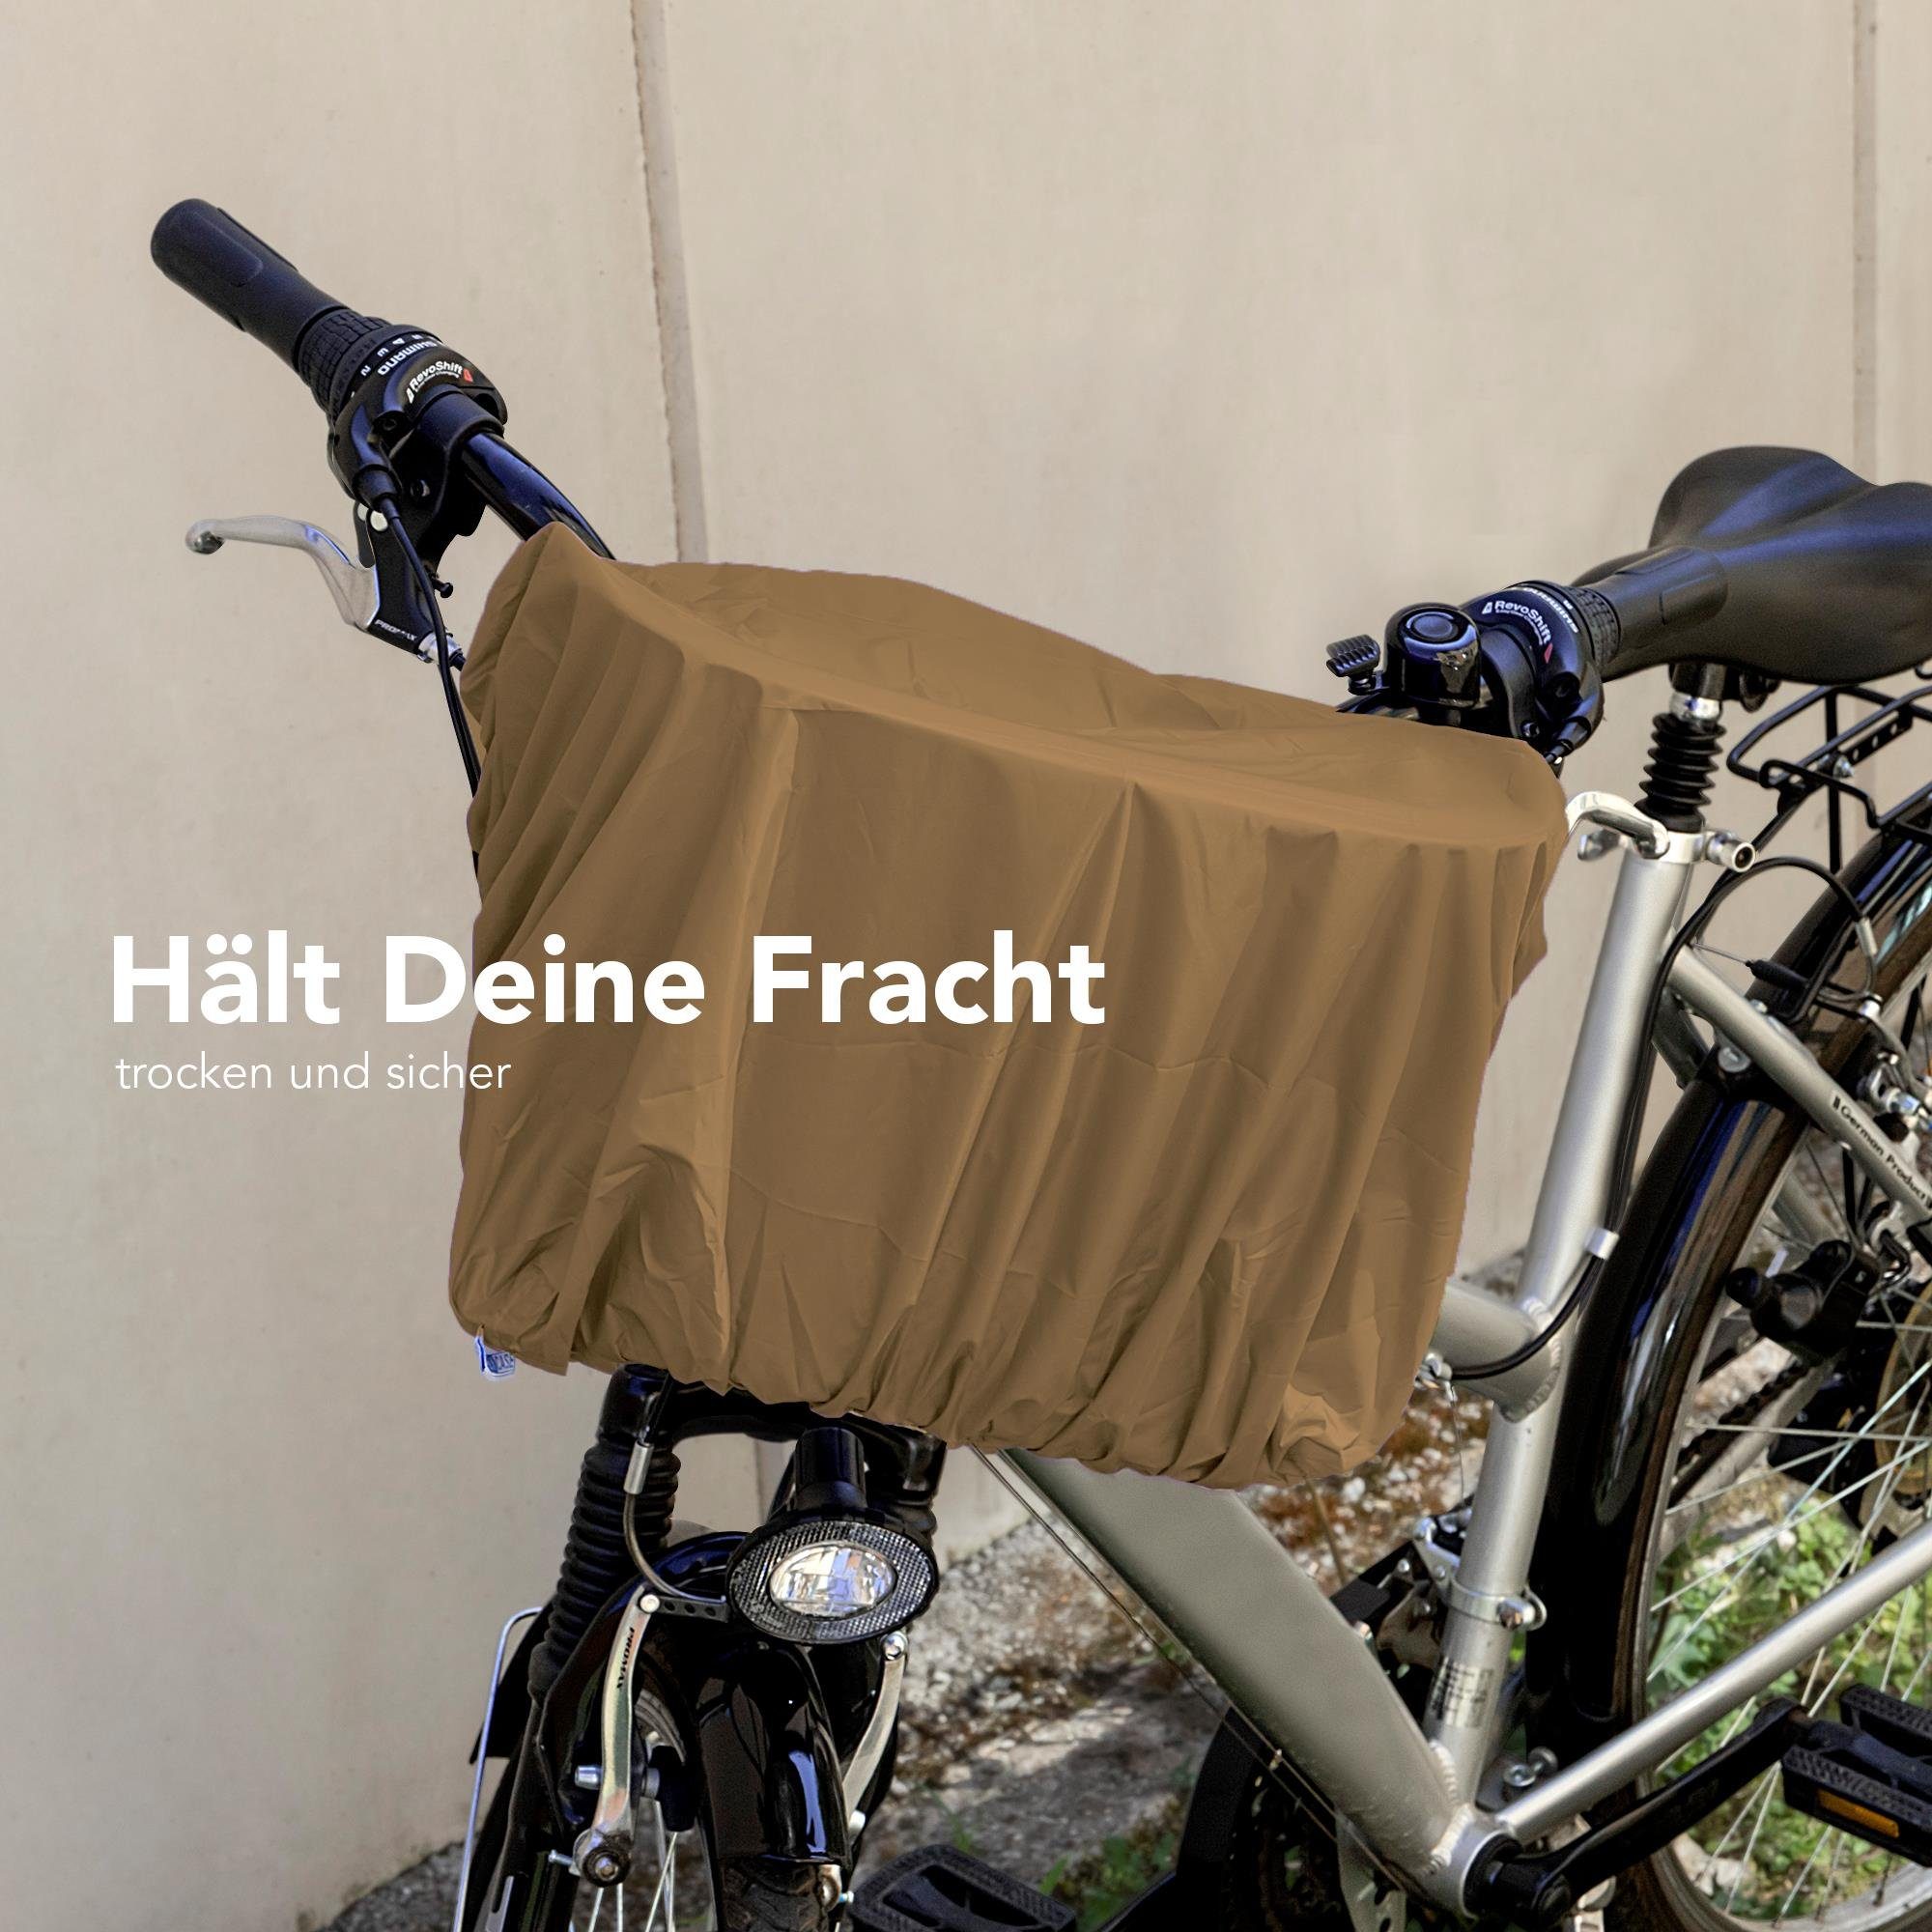 EAZY CASE Fahrradkorb Universal Regenschutz für Korb, Regenschutzhaube  Korbschutz Regen Überzug elastisch wasserdicht Braun